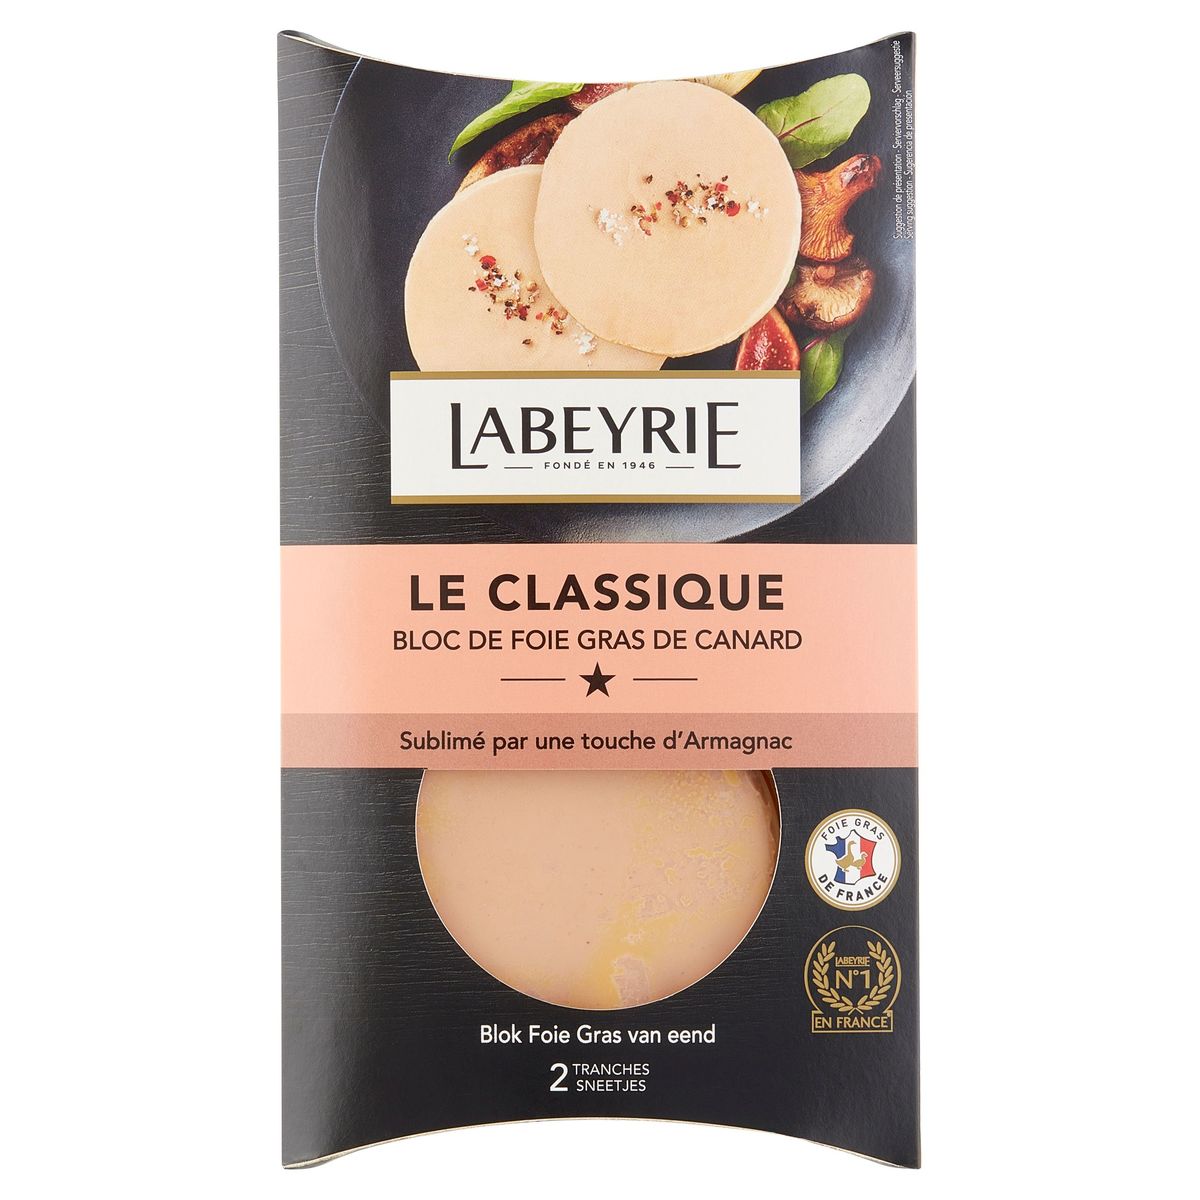 Product “LABEYRIE : Le Duo Bloc de foie gras de Canard”